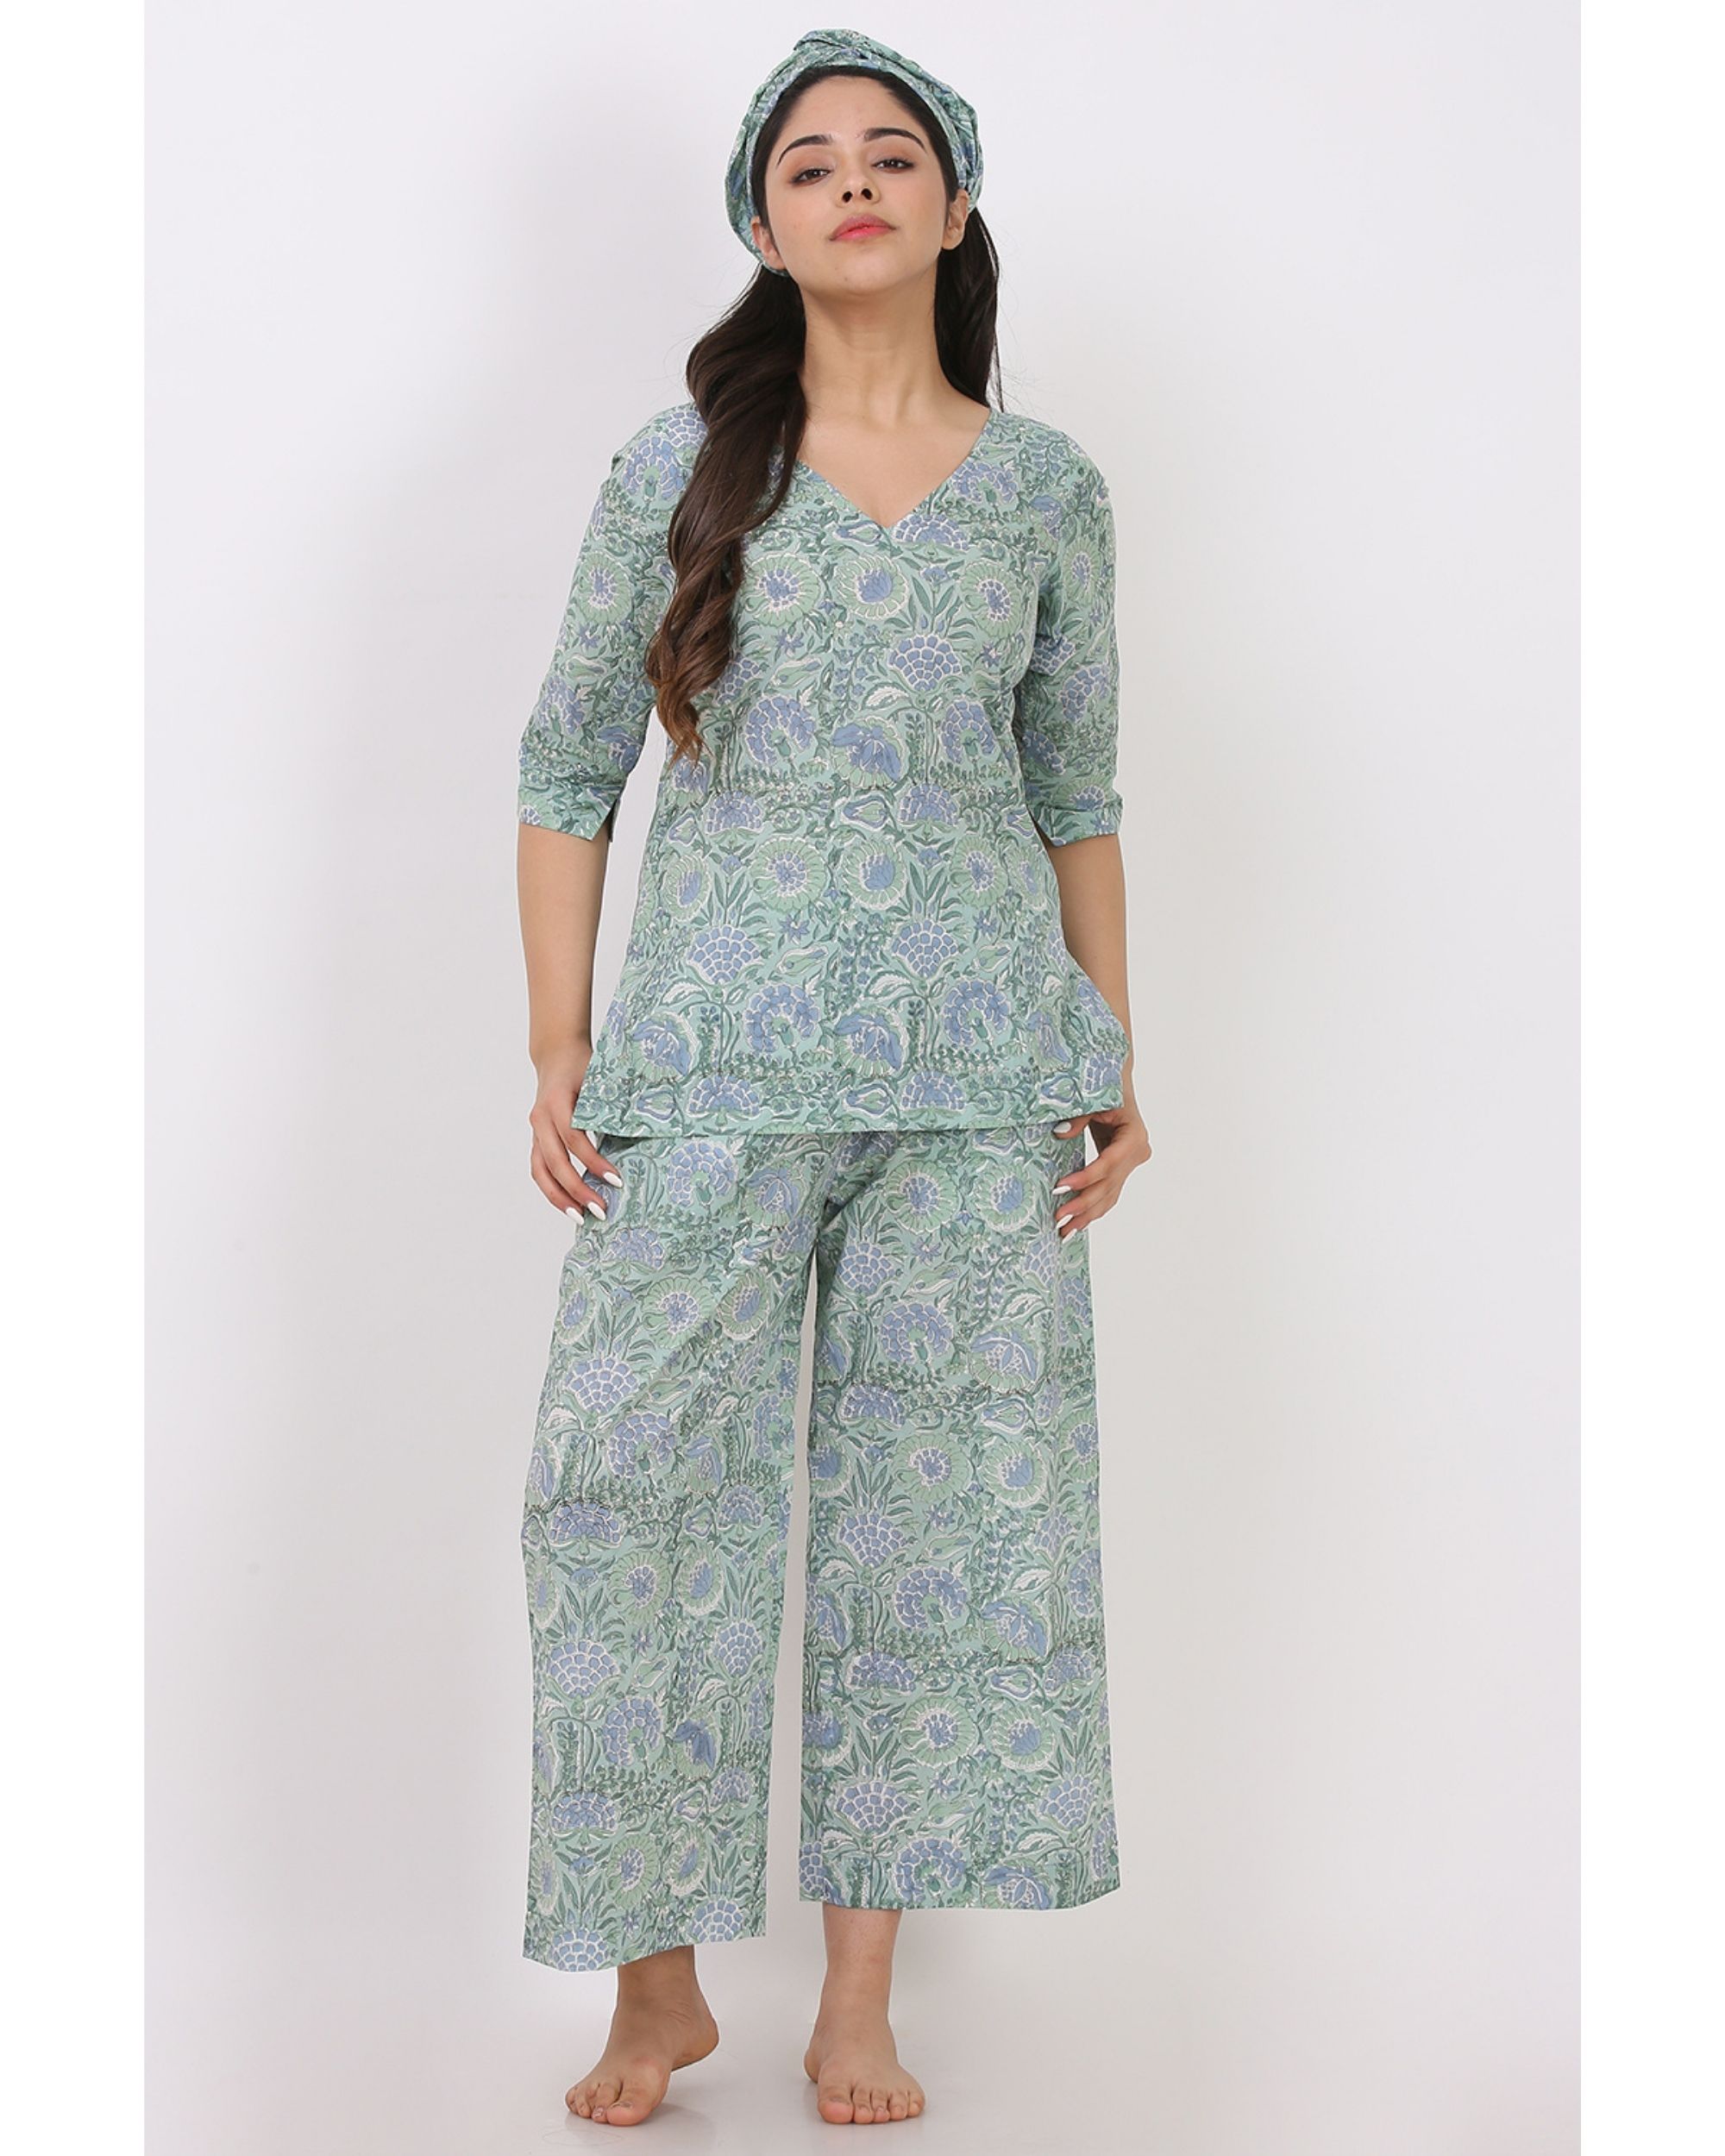 Blue and green short printed kurta and pyjama with hair band - set of three